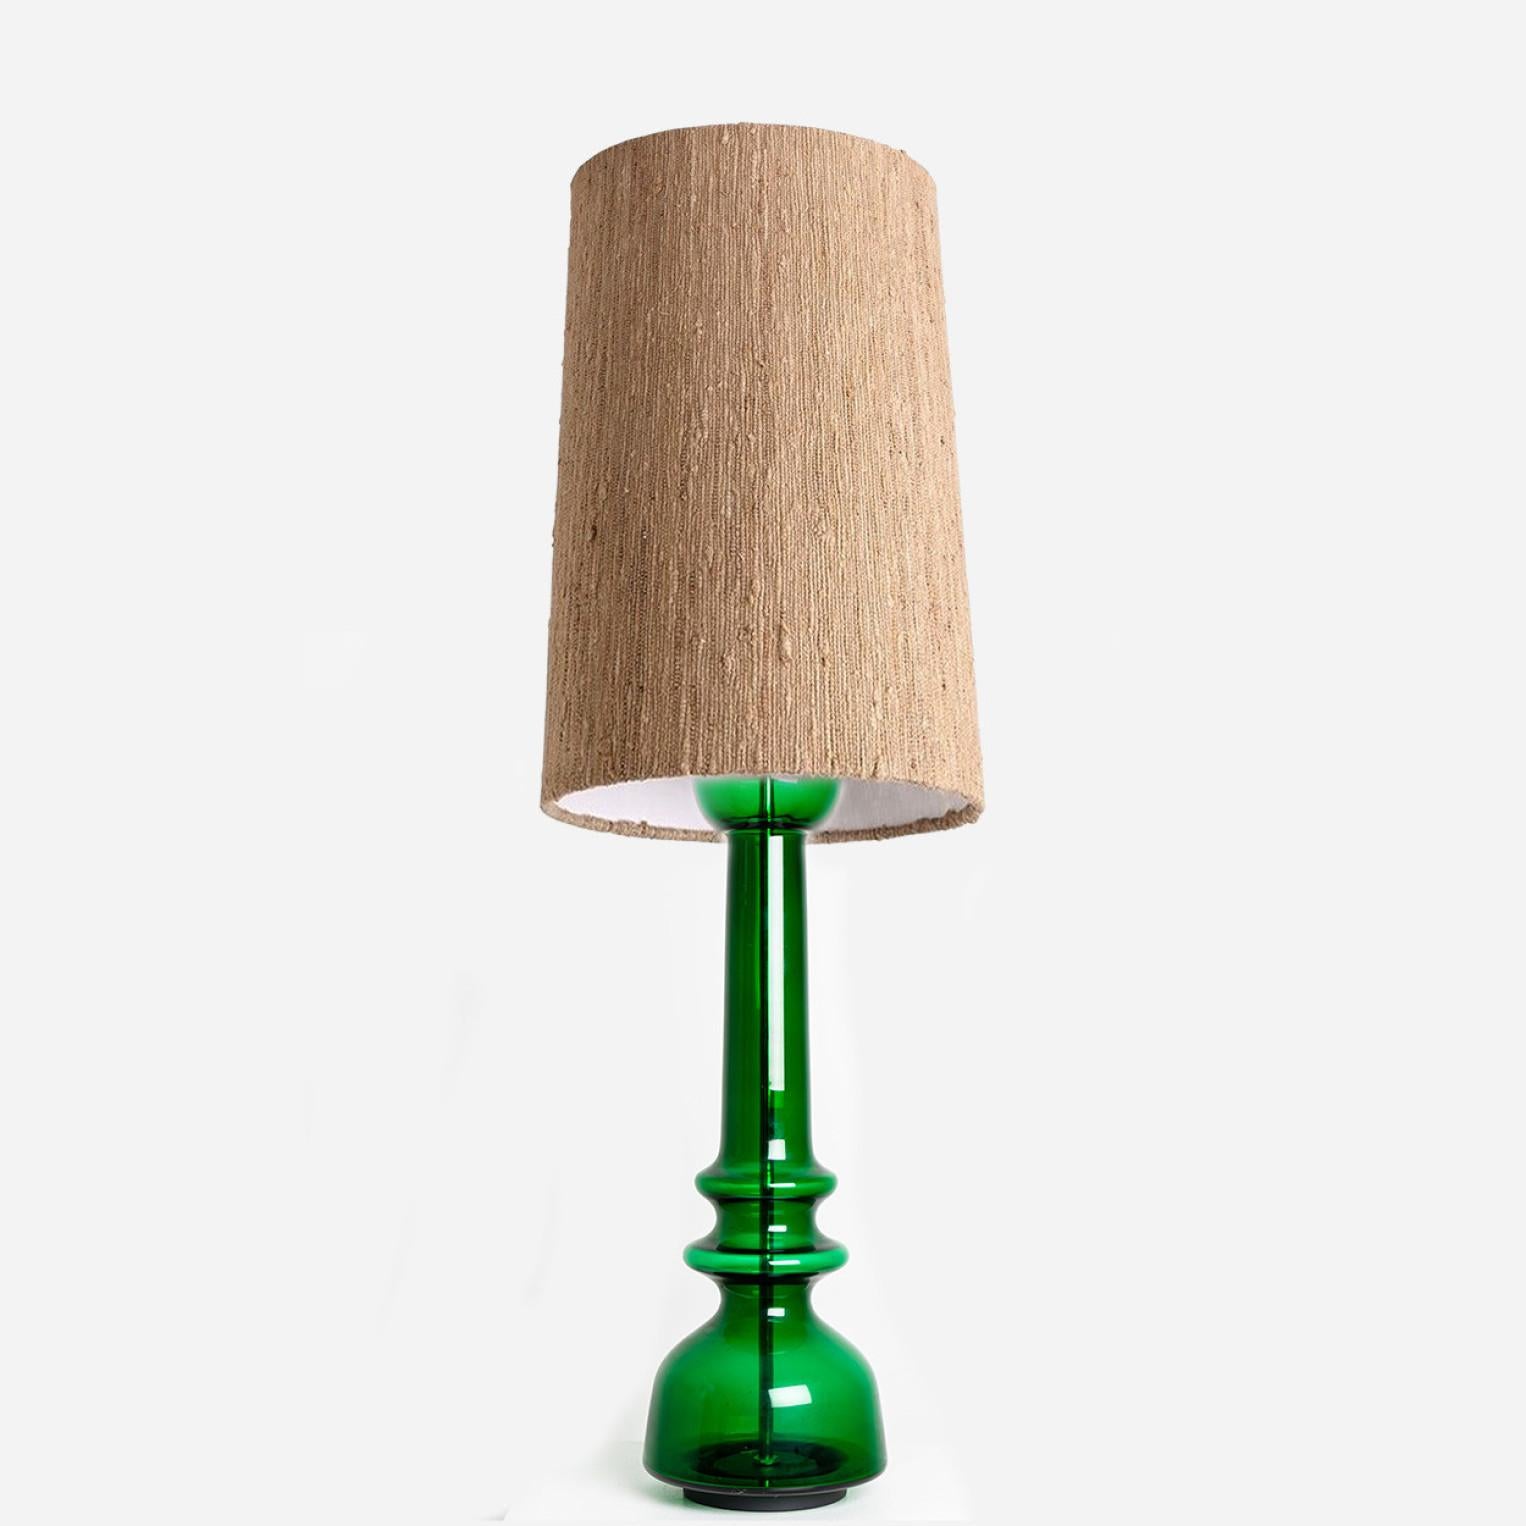 Ein einzigartiges, minimalistisches und zeitloses Design. Entworfen und hergestellt von Doria Leuchten Deutschland, um 1960.
Die Glastischlampe hat einen leuchtend grünen, transparenten Sockel, durch dessen Mitte ein Chromstab verläuft.